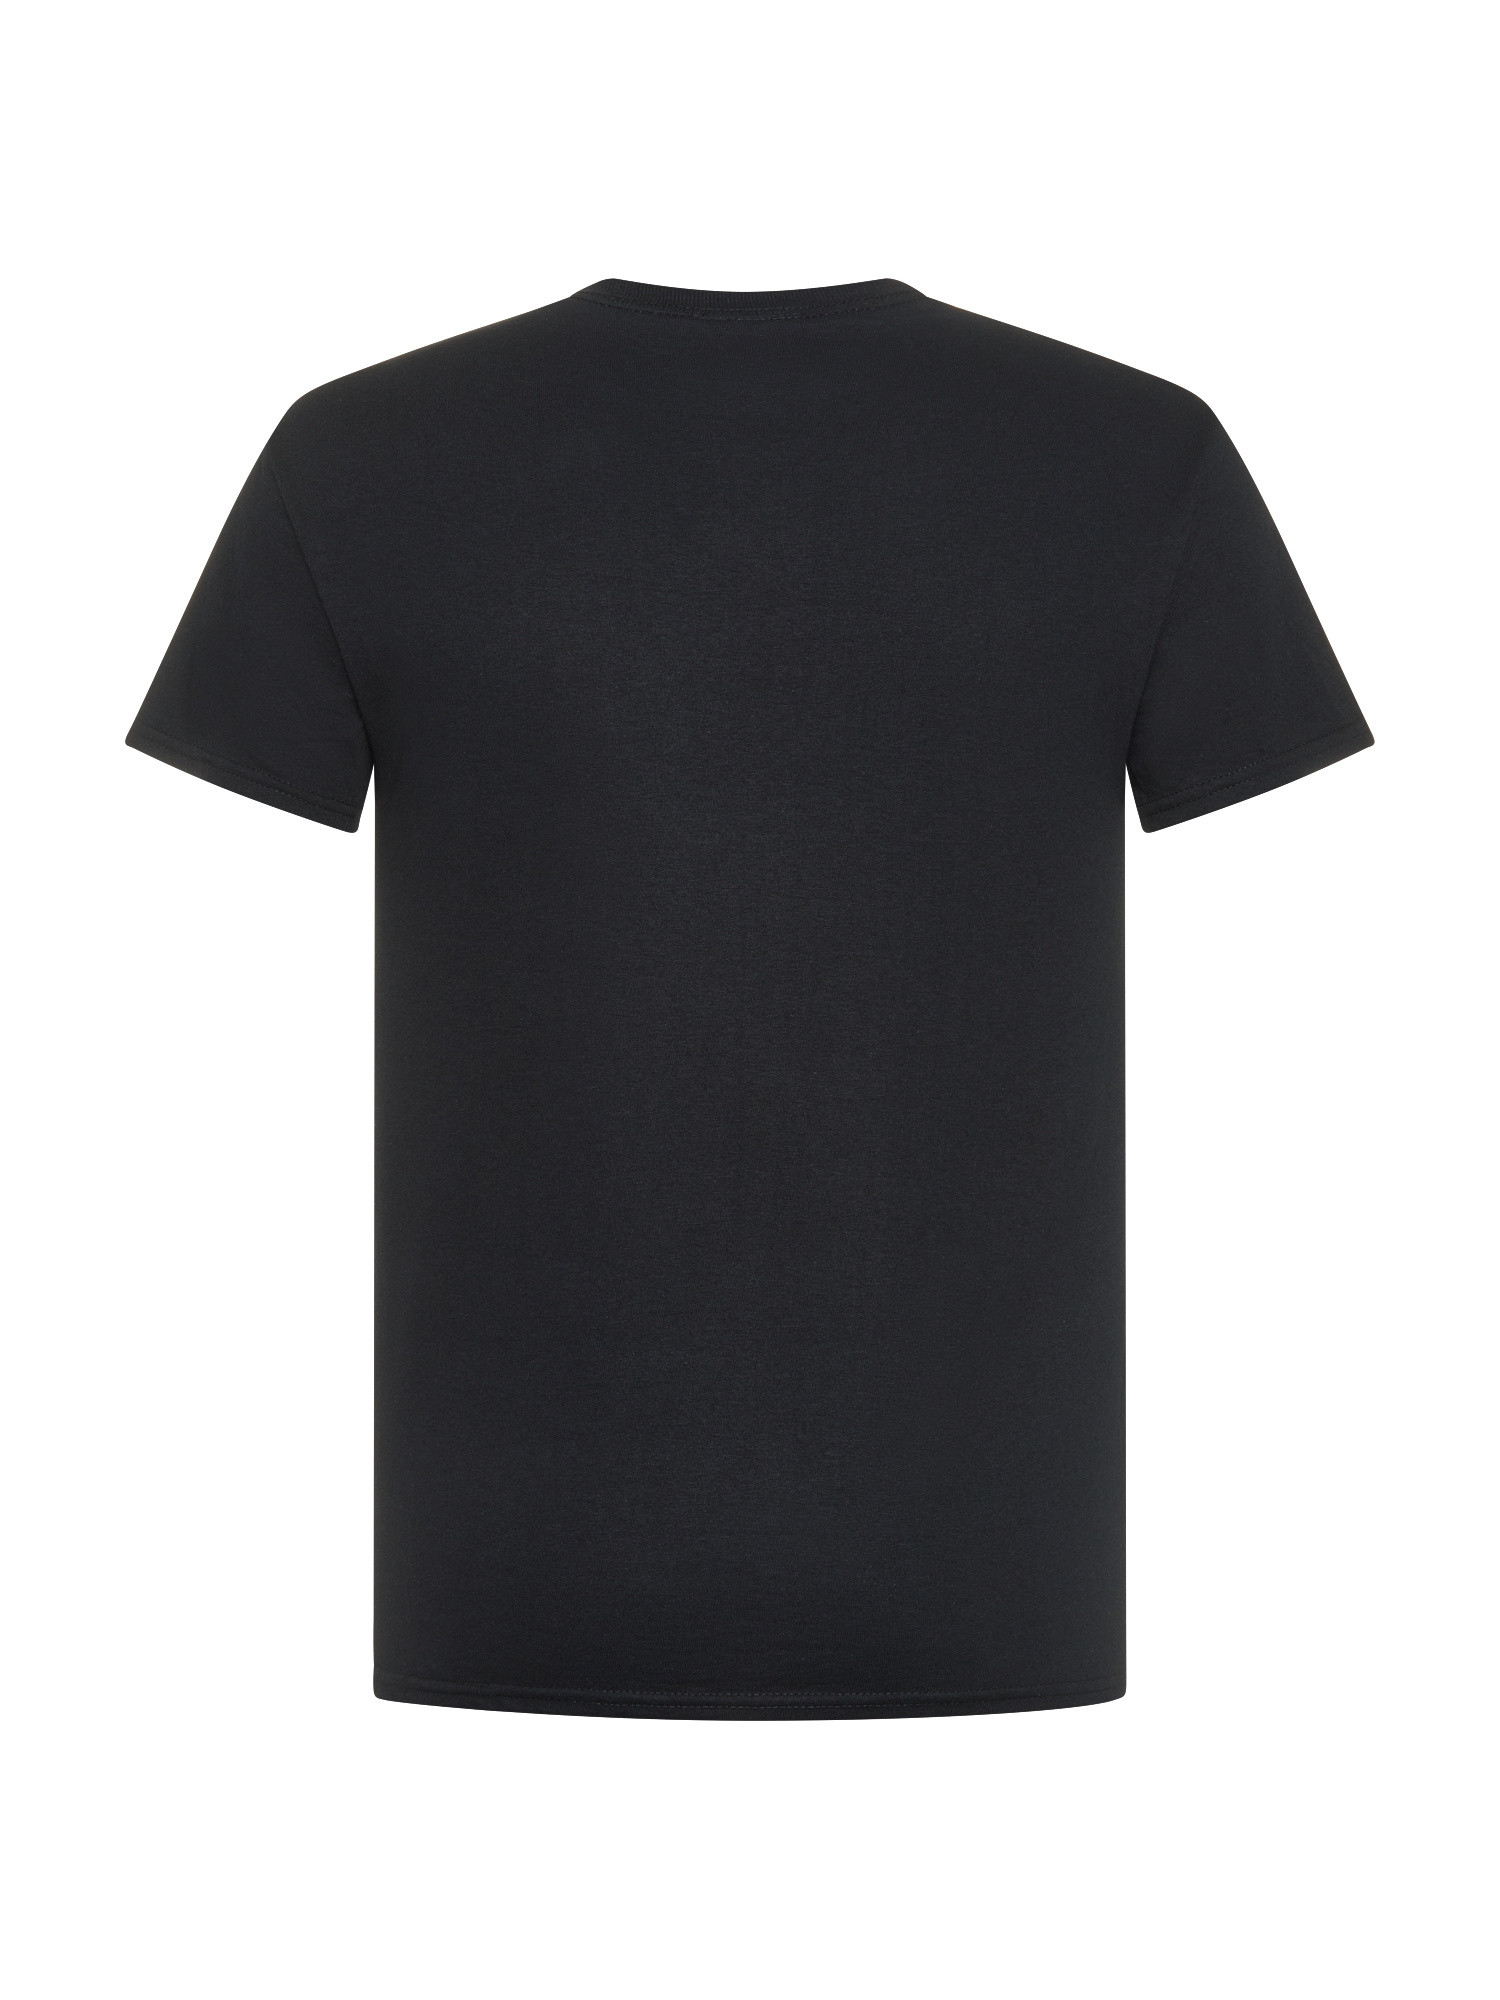 Thrasher - T-Shirt logo fiamme, Nero, large image number 1